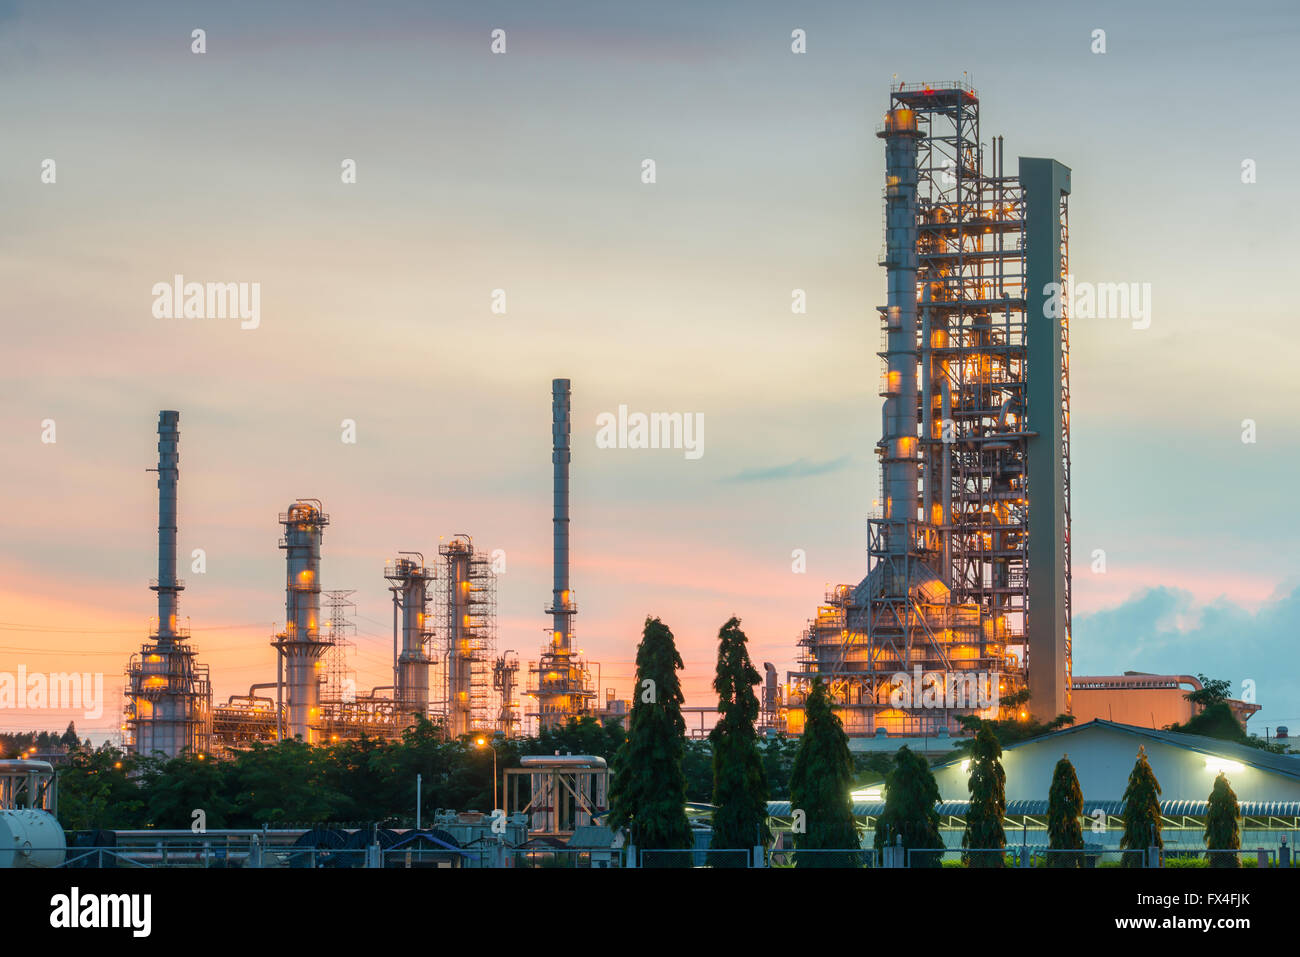 Panorama de la raffinerie de pétrole et des réservoirs de stockage au crépuscule Banque D'Images